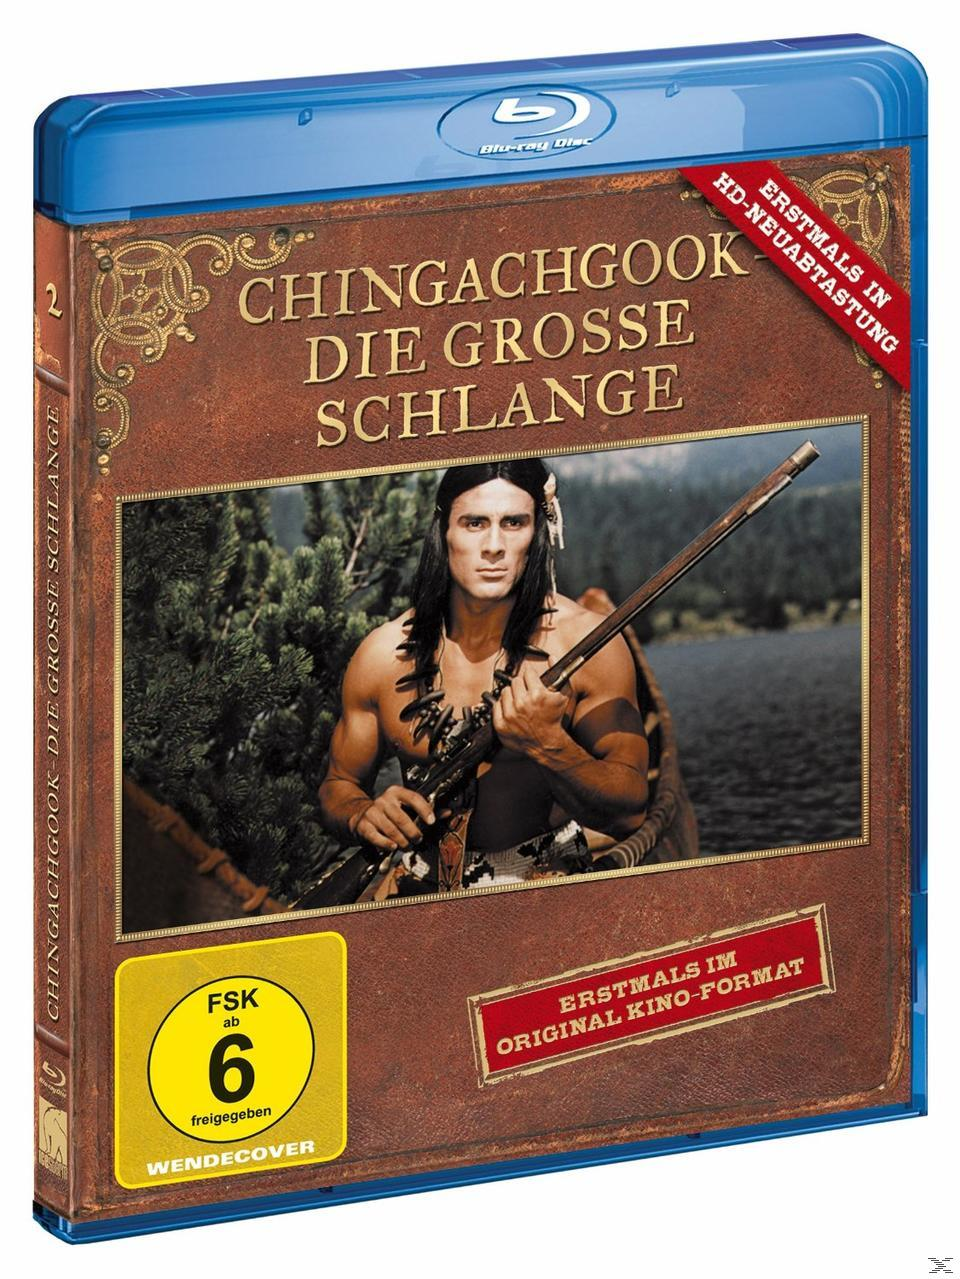 Blu-ray grosse Schlange - Die Chingachgook